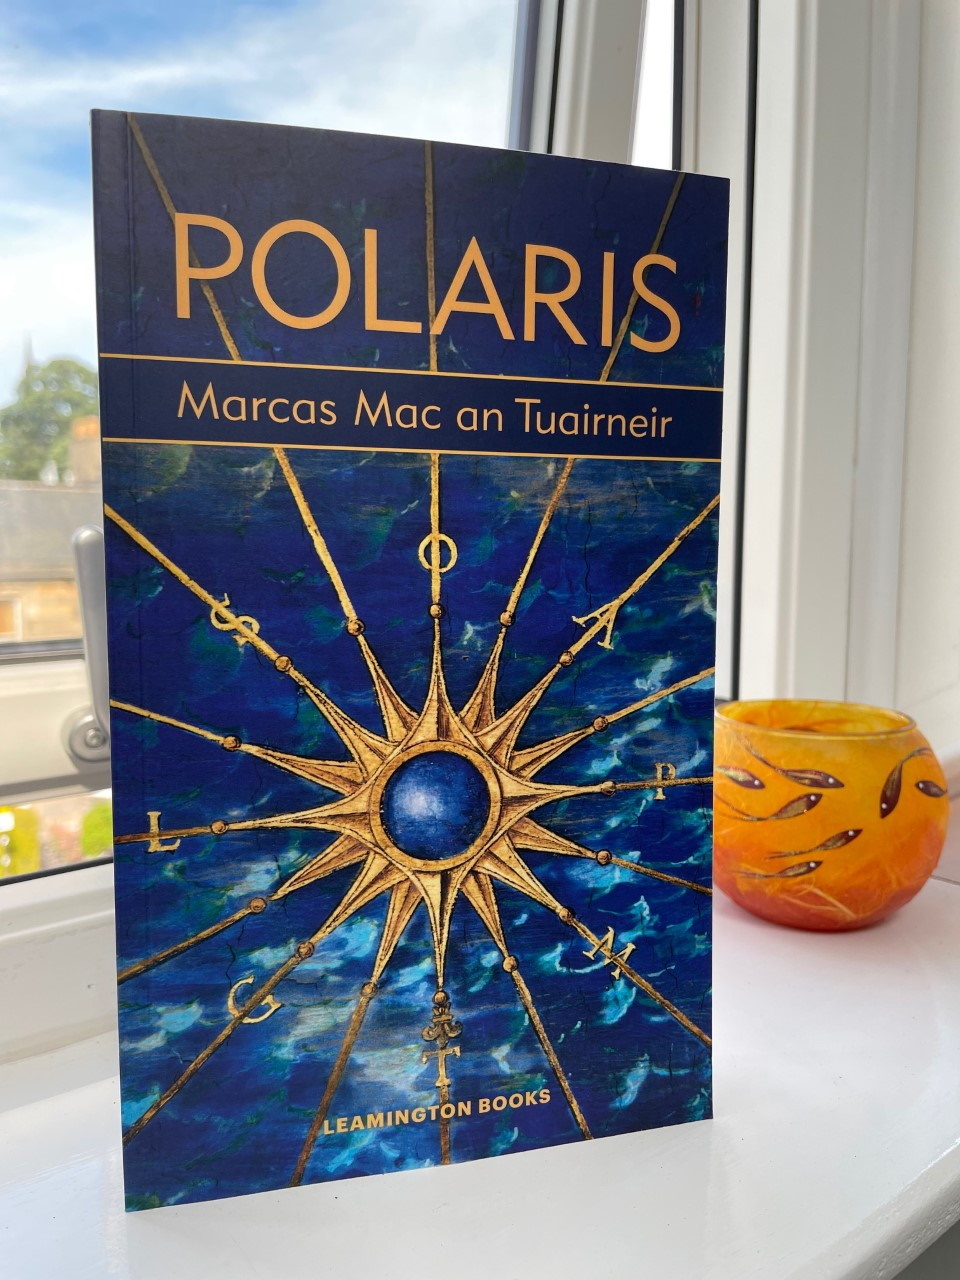 Polaris by Marcas Mac an Tuairneir